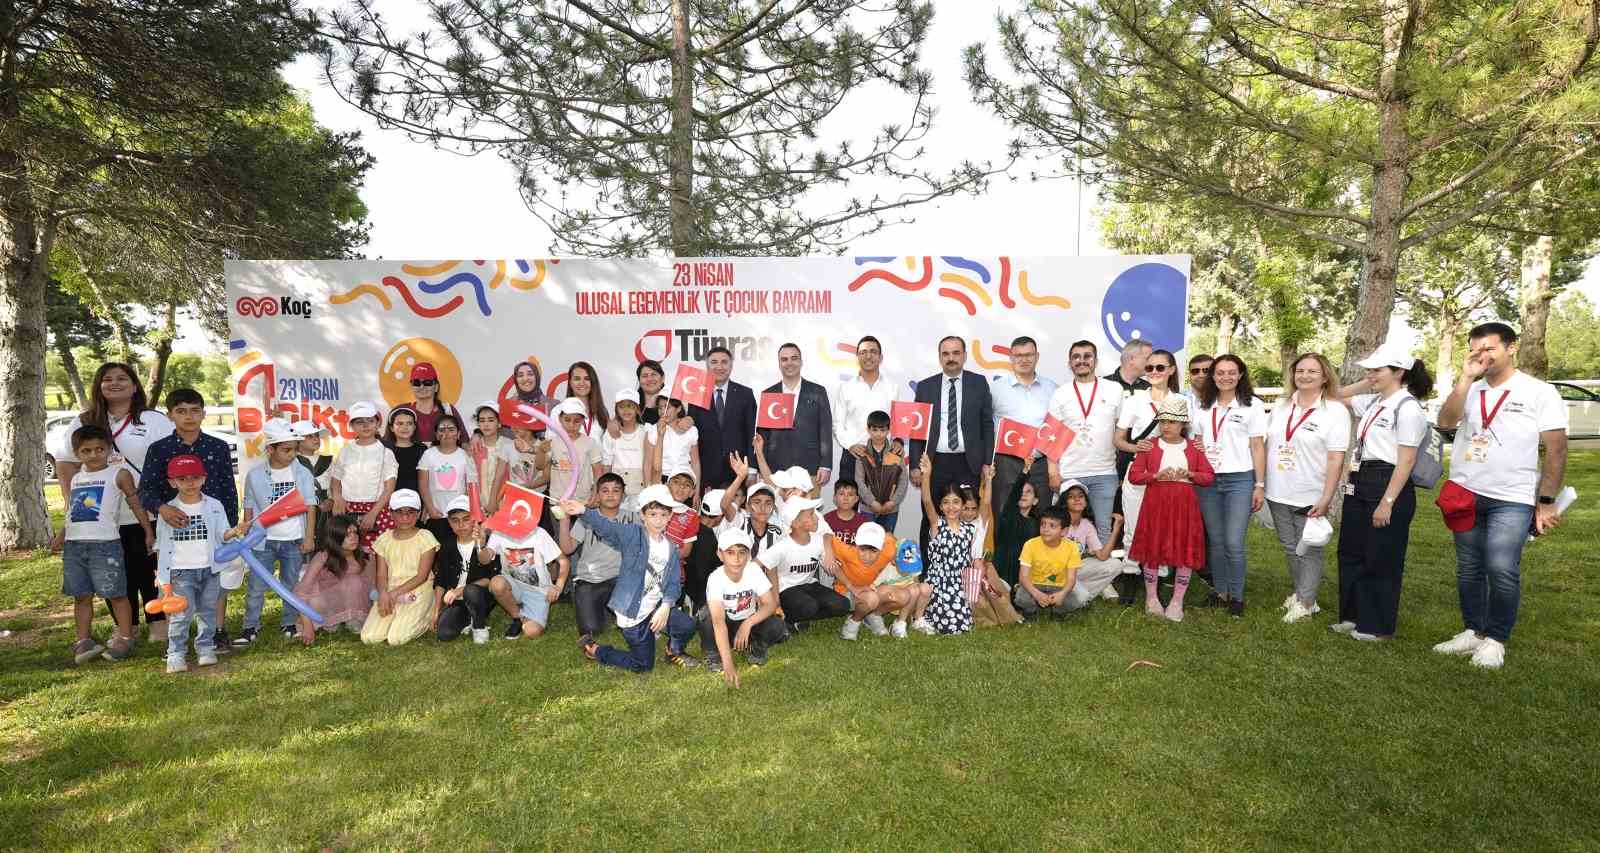 Tüpraş, 23 Nisan Ulusal Egemenlik ve Çocuk Bayramı’nı 12. kez düzenlediği çocuk şenliği ile kutladı
